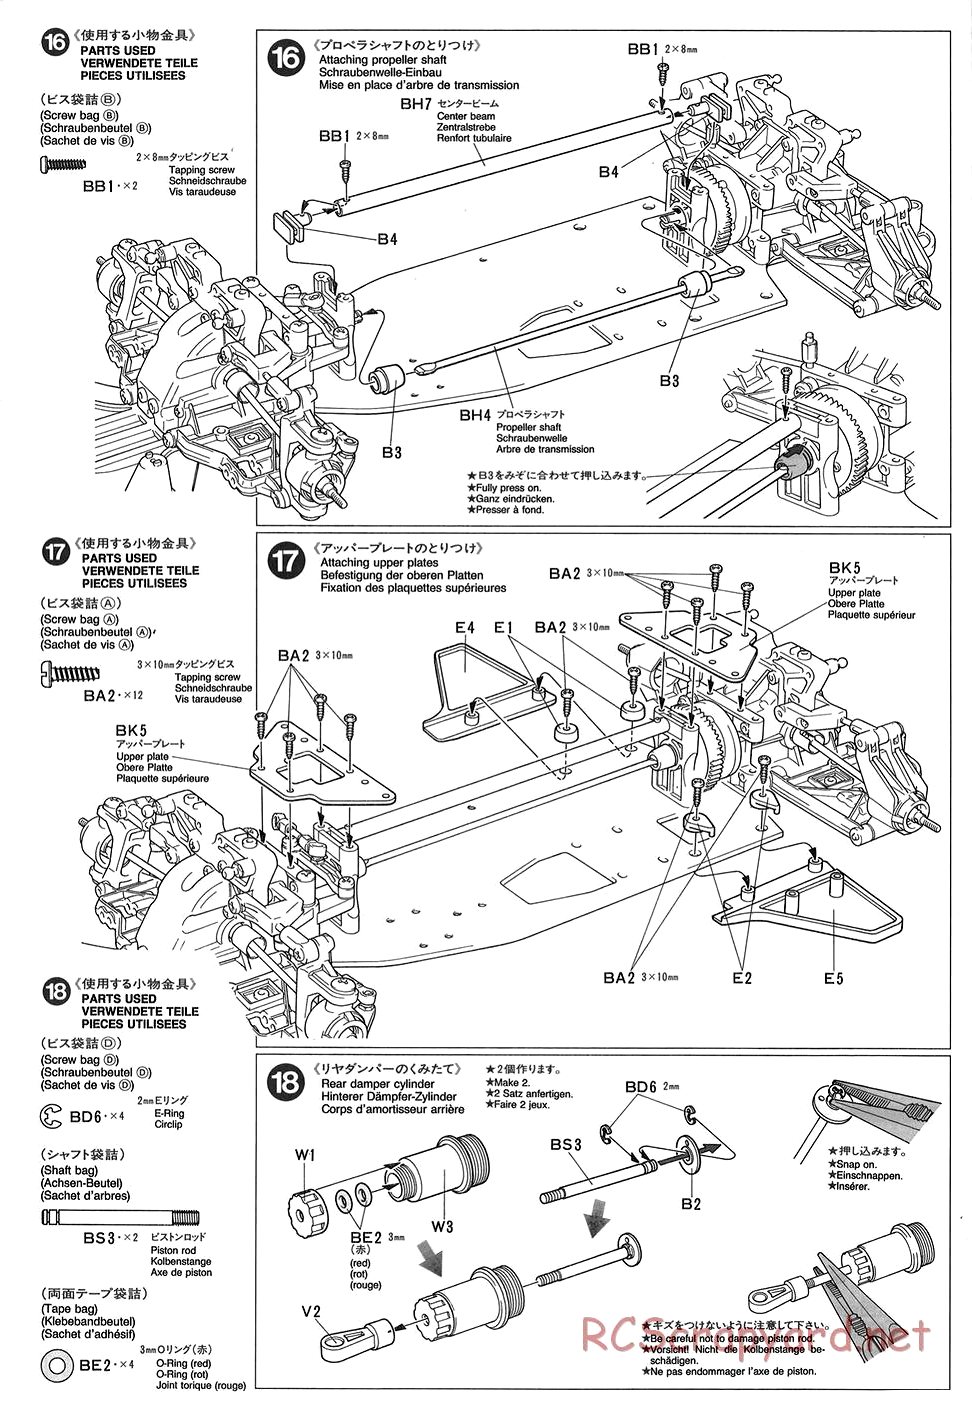 Tamiya - TGX Mk.1 Chassis - Manual - Page 10